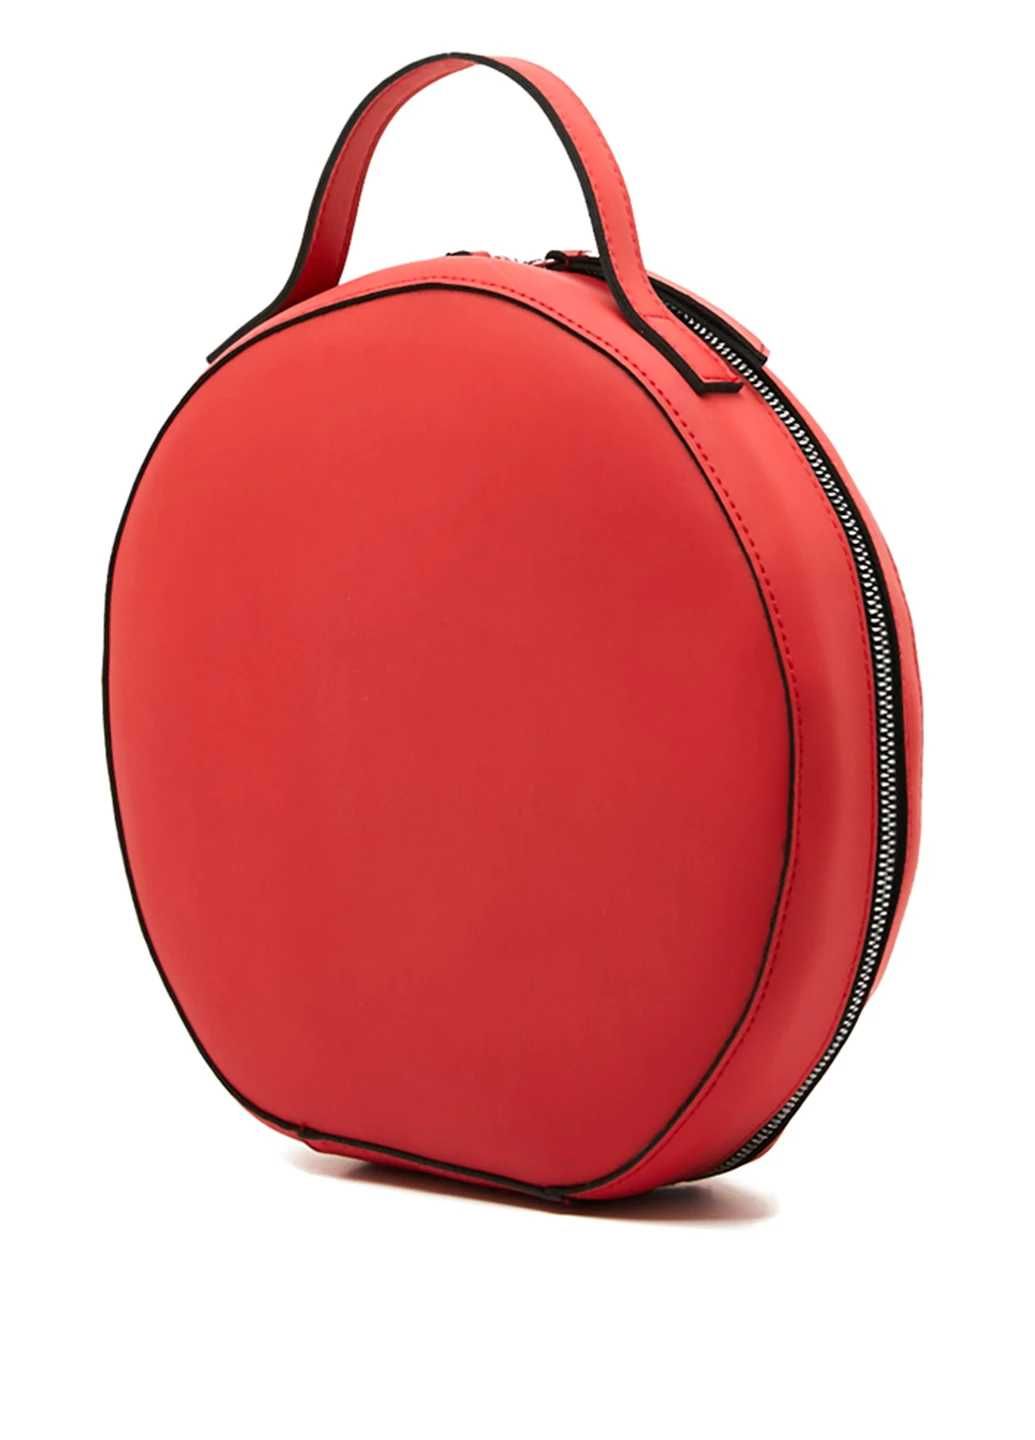 Новая  сумка, красная,  вместительная , застежка молния, диаметр 26 см